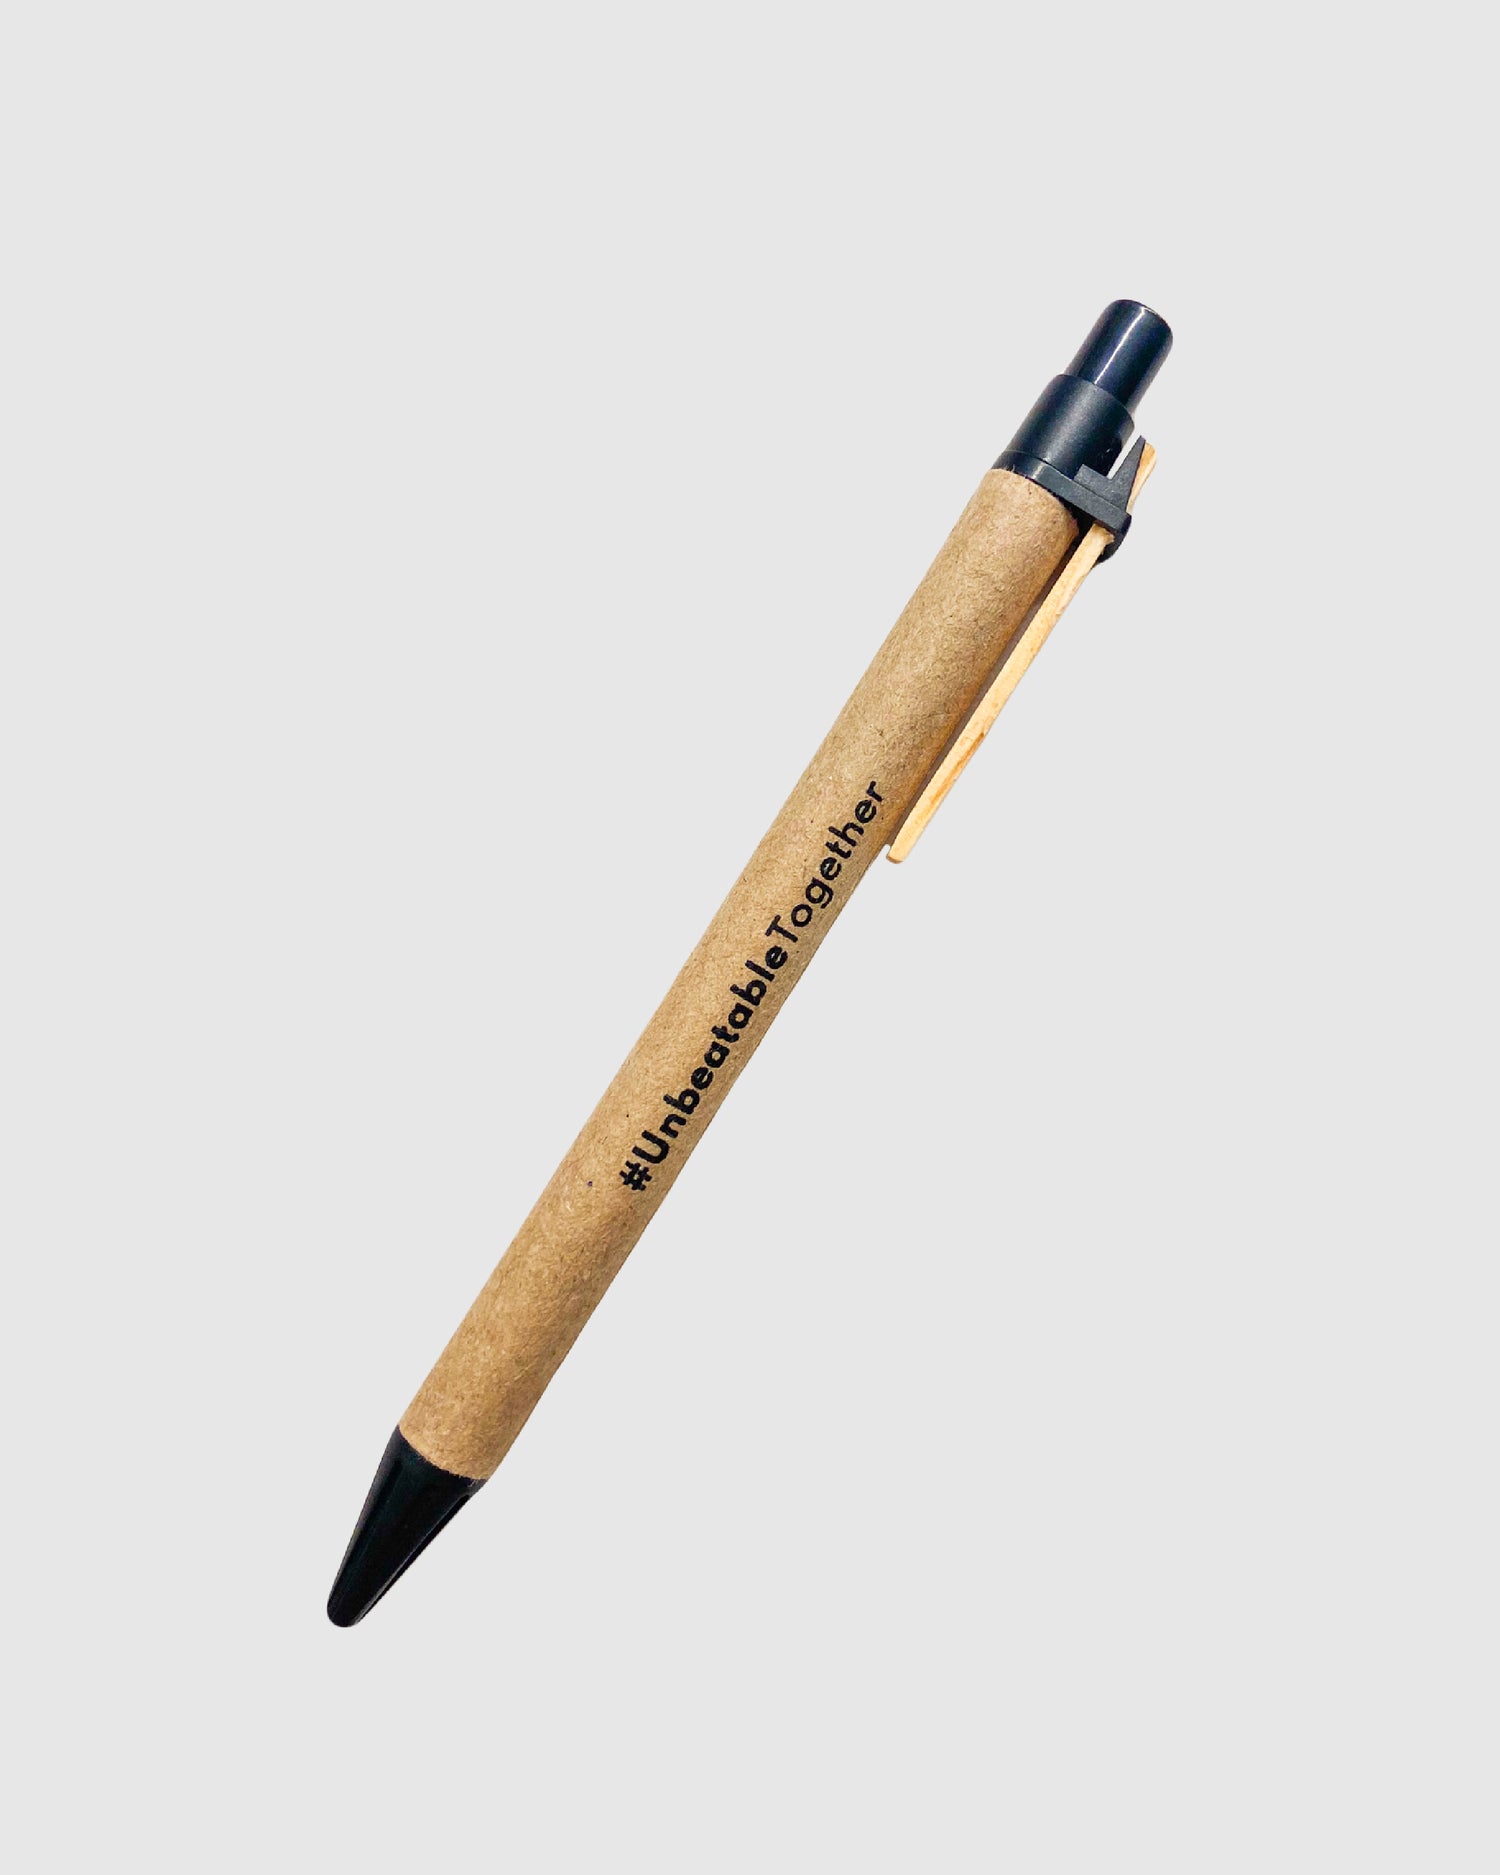 Kugelschreiber aus recycelter Pappe mit schwarzen Details und schwarzem Aufdruck des Mottos #UnbeatableTogether.